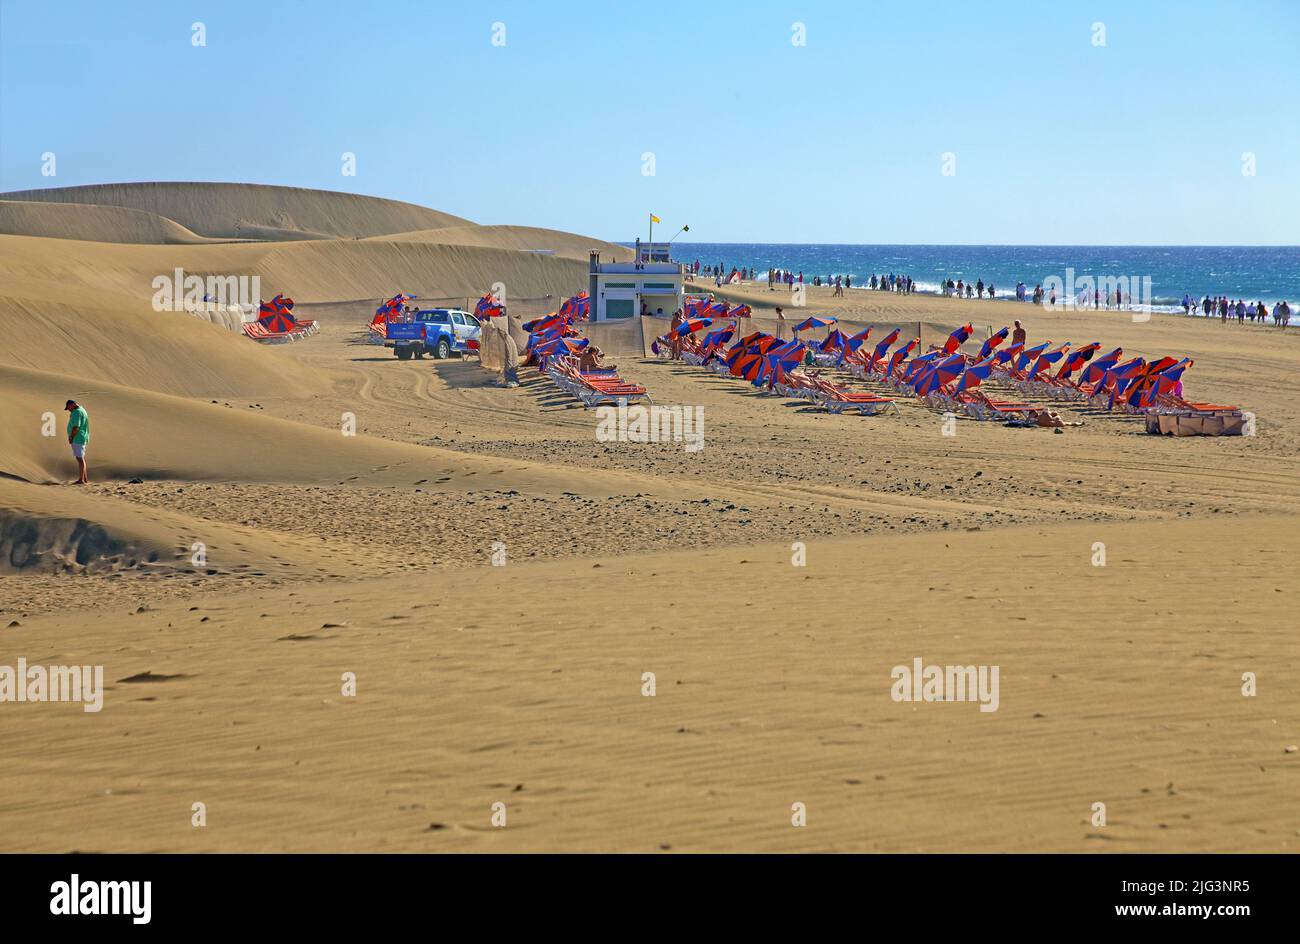 Menschen am Strand bei den Duenen, die Duenen erstreckten sich von Maspalomas bis Playa del Ingles und wurden 1987 zum Naturschutzgebiet erklaert, MASP Stockfoto